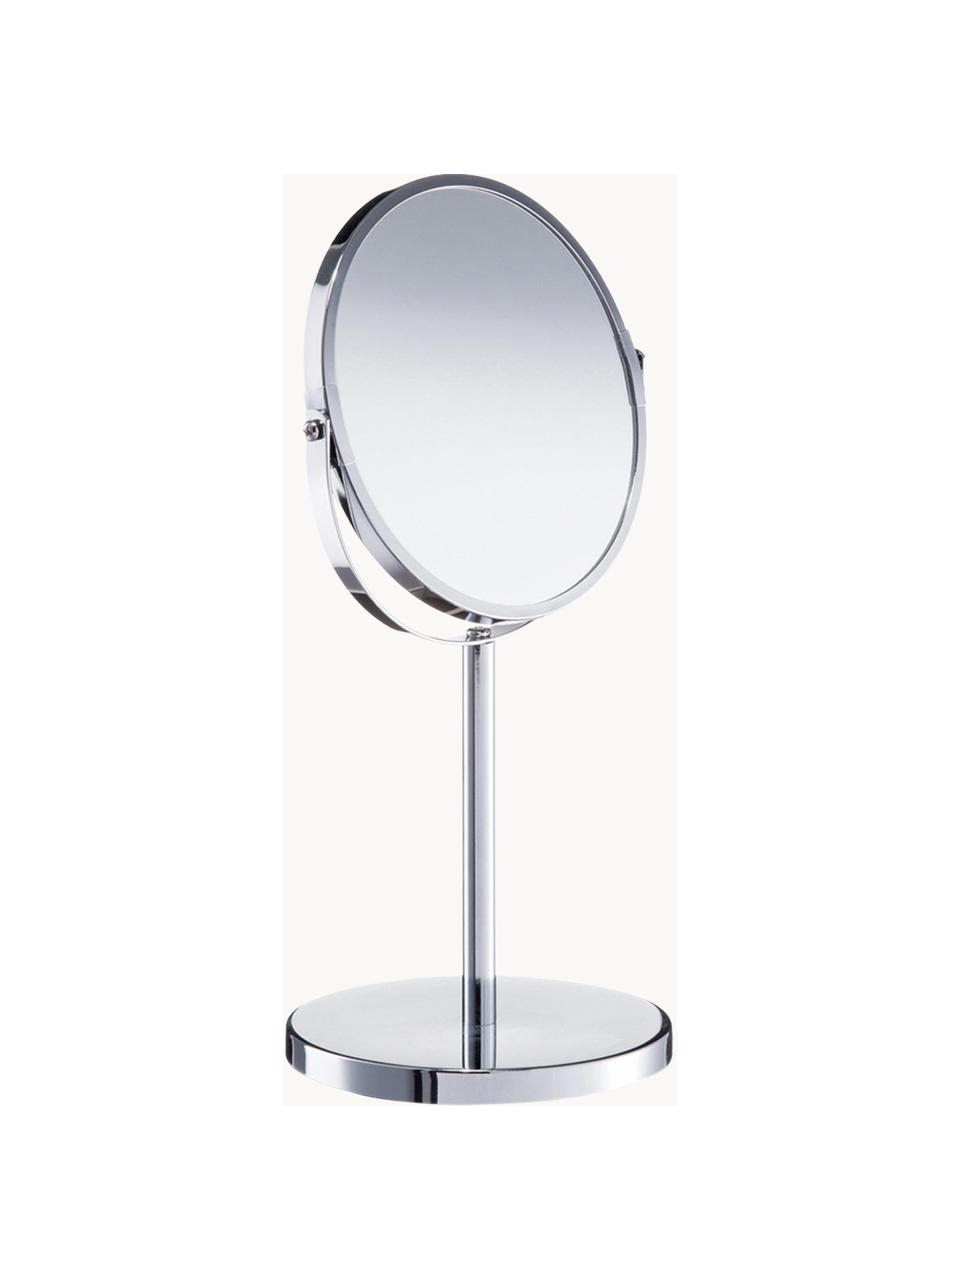 Runder Kosmetikspiegel Flip mit Vergrößerung und Metallsockel, Rahmen: Metall, verchromt, Spiegelfläche: Spiegelglas, Silberfarben, Ø 17 x H 35 cm